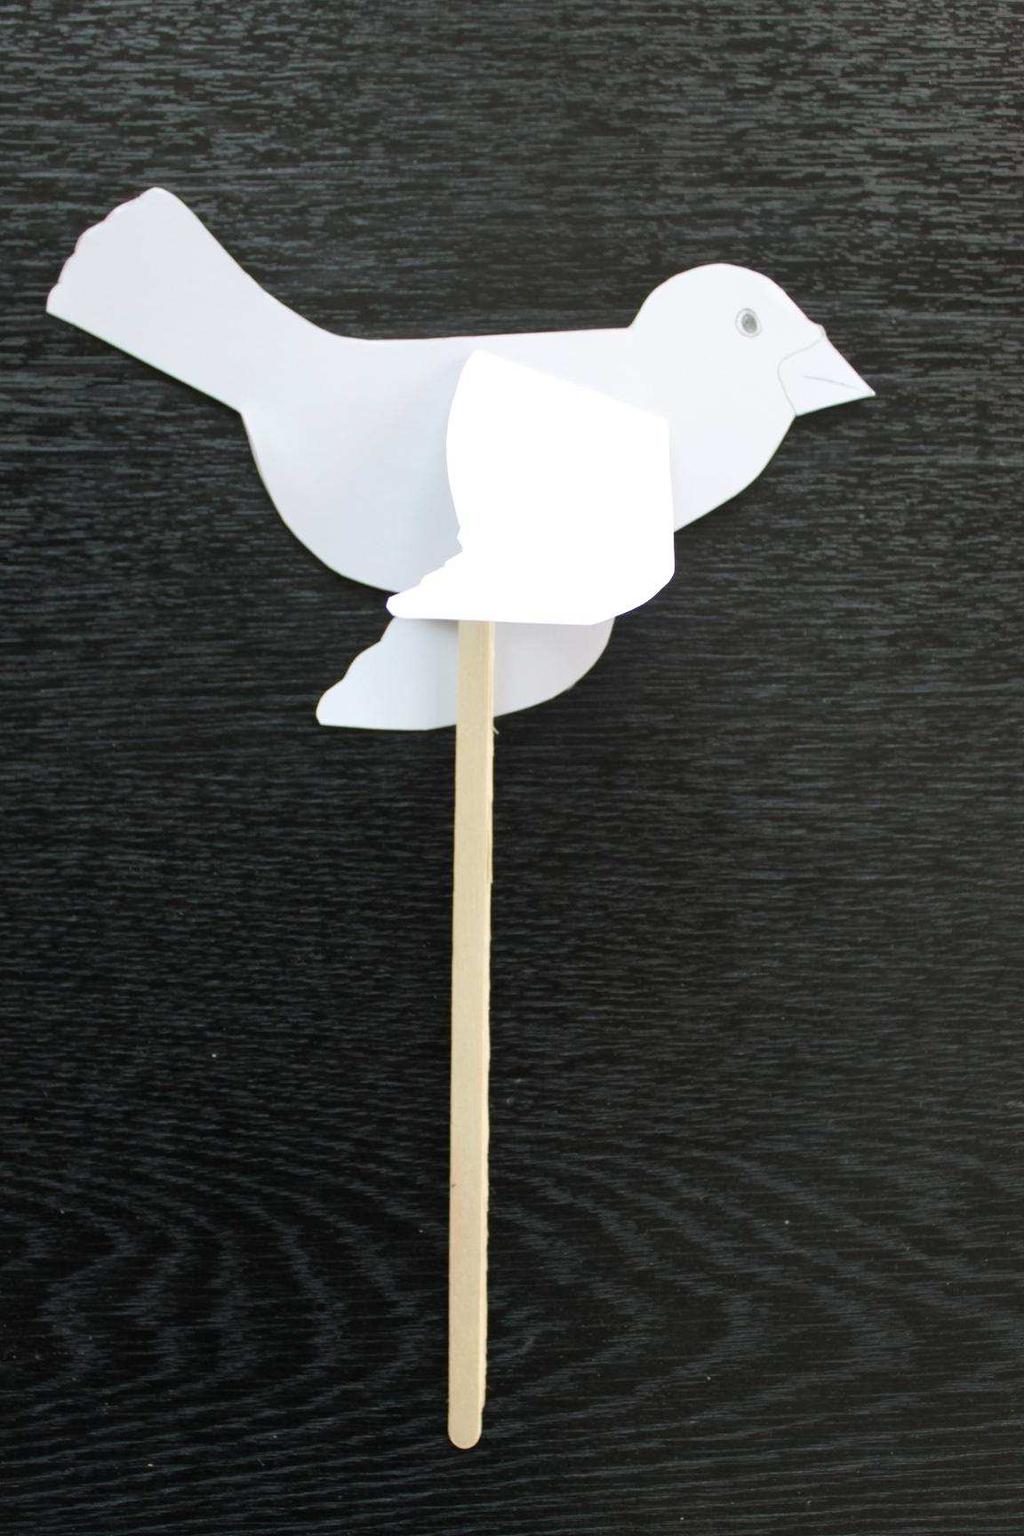 2. Kuş Gerekli Malzemeler: - İstediğiniz renkte fon kartonu - Makas - Yapıştırıcı - Kalem - Uzun çubuk (Dondurma çubuğu, adana şiş için kullanılan çubuk veya kalın mukavvadan hazırlayacağınız bir